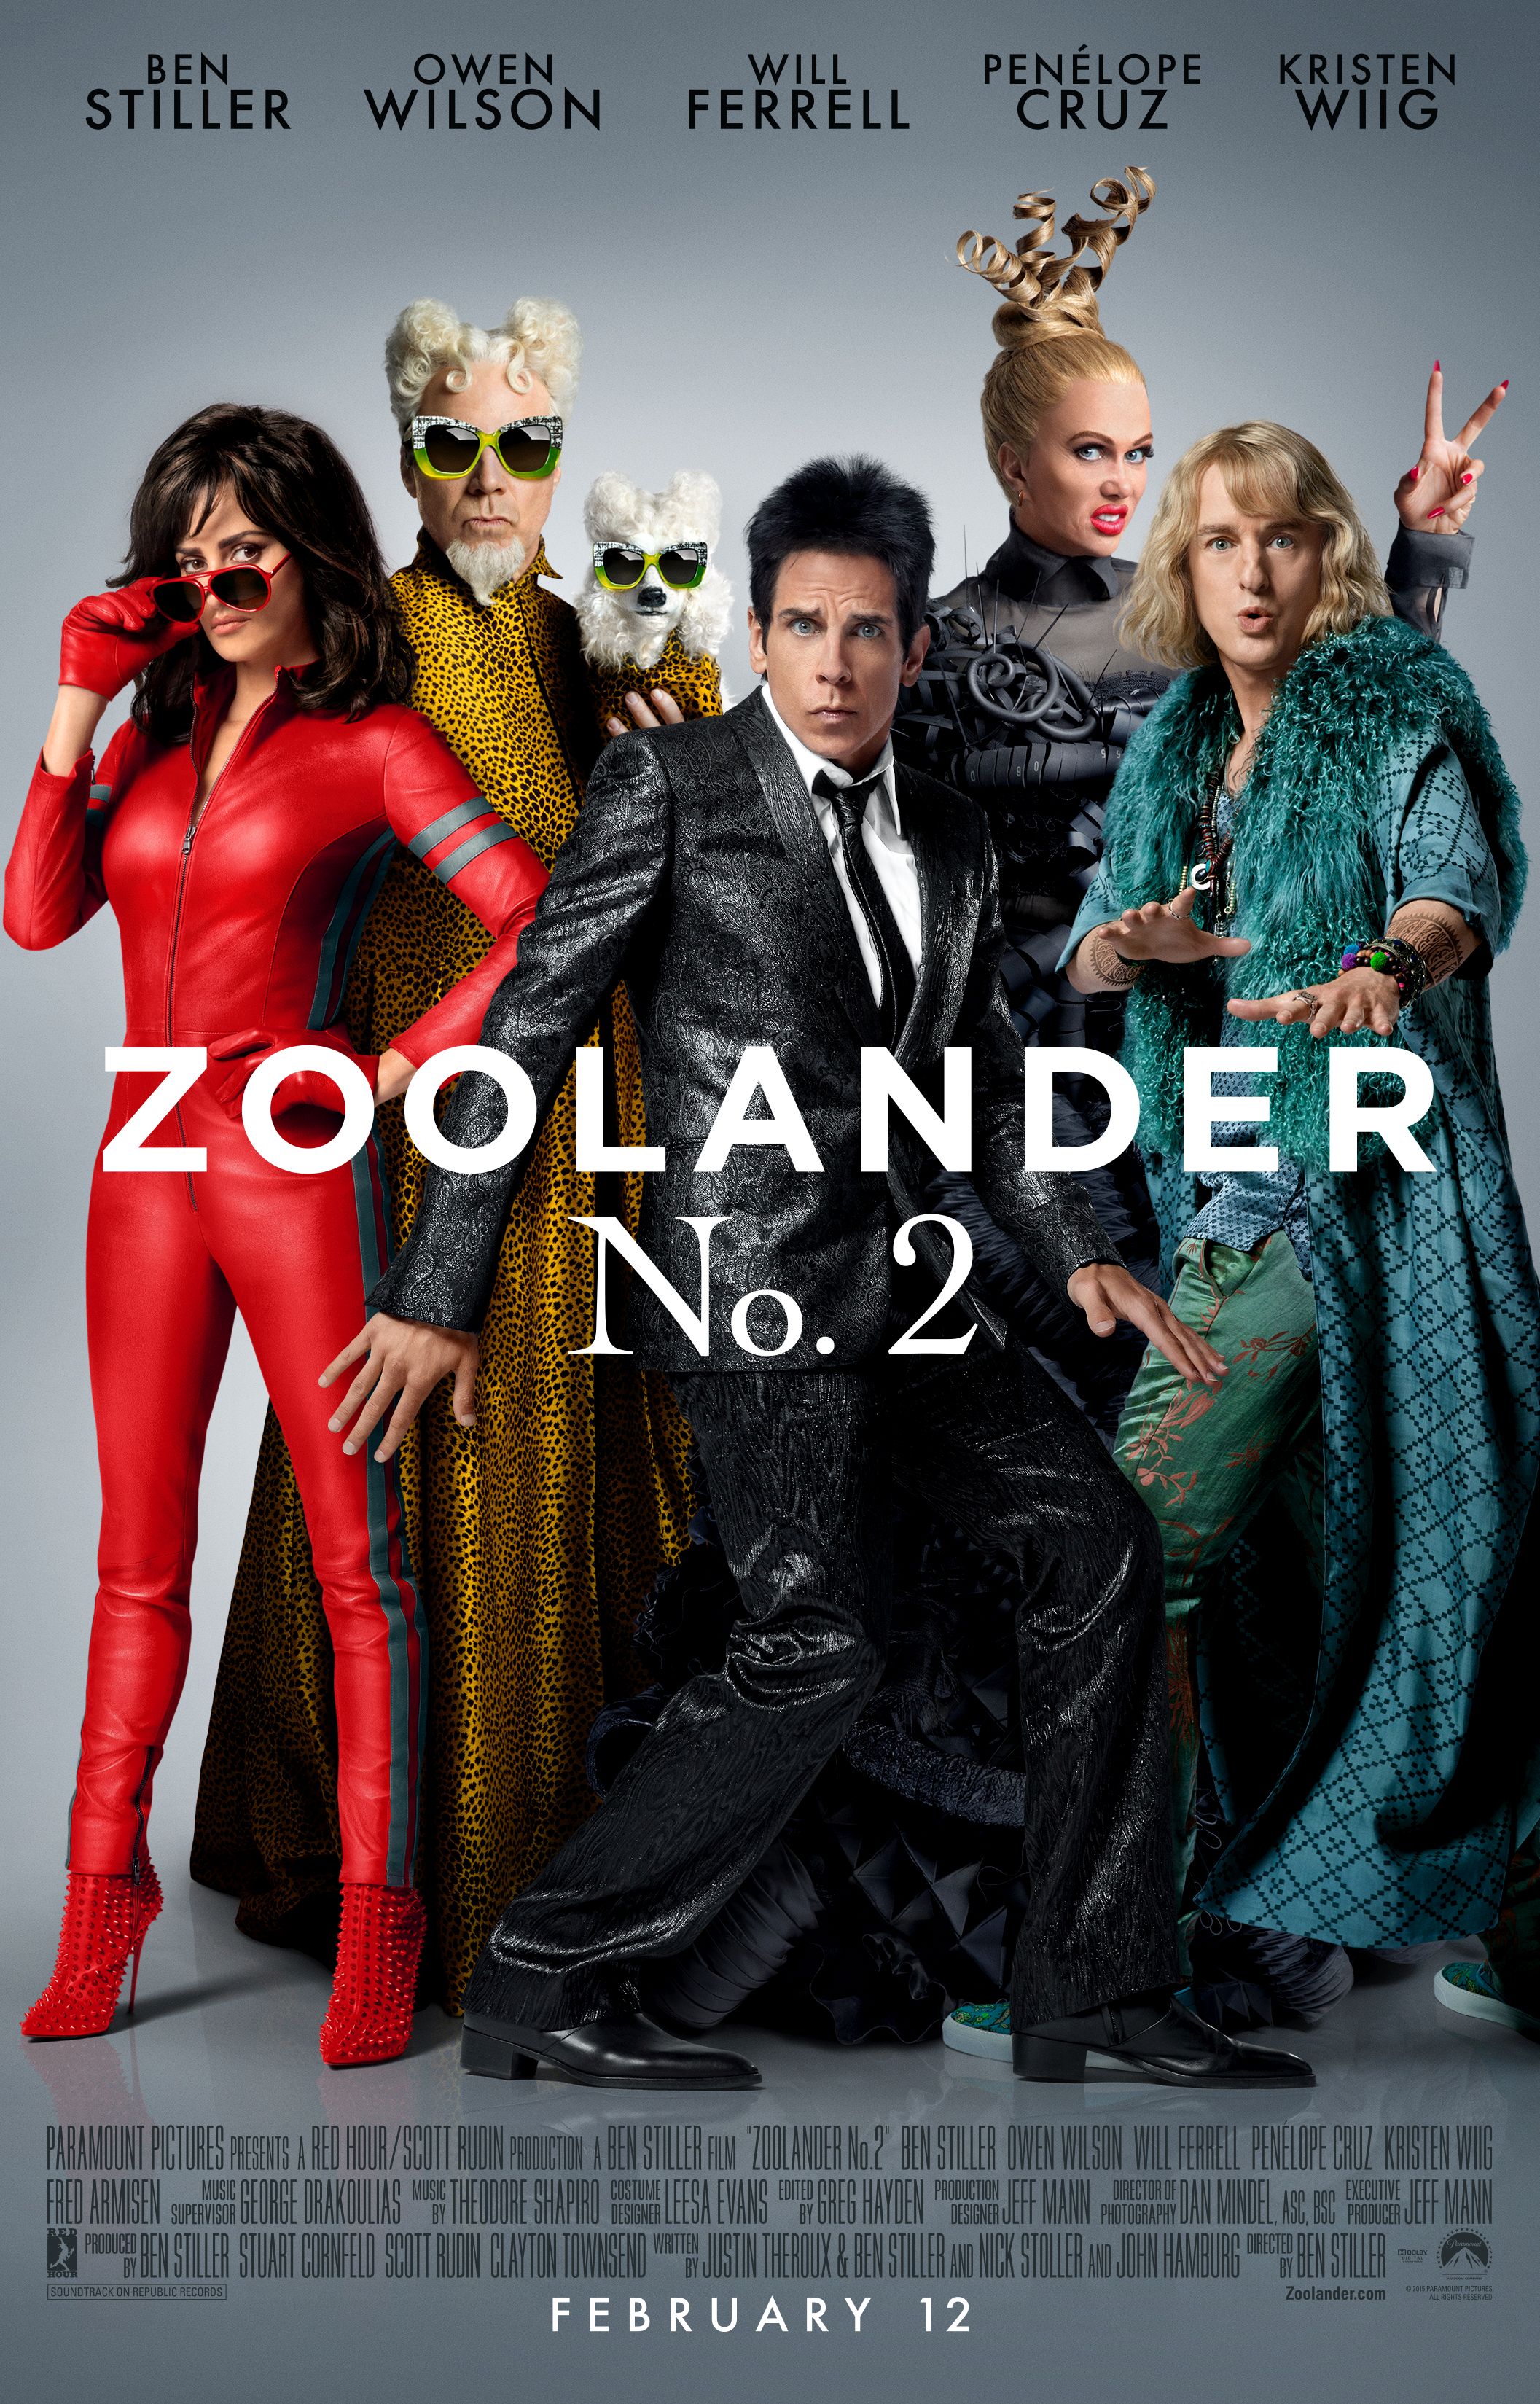 251-zoolander2_movie_poster.jpg